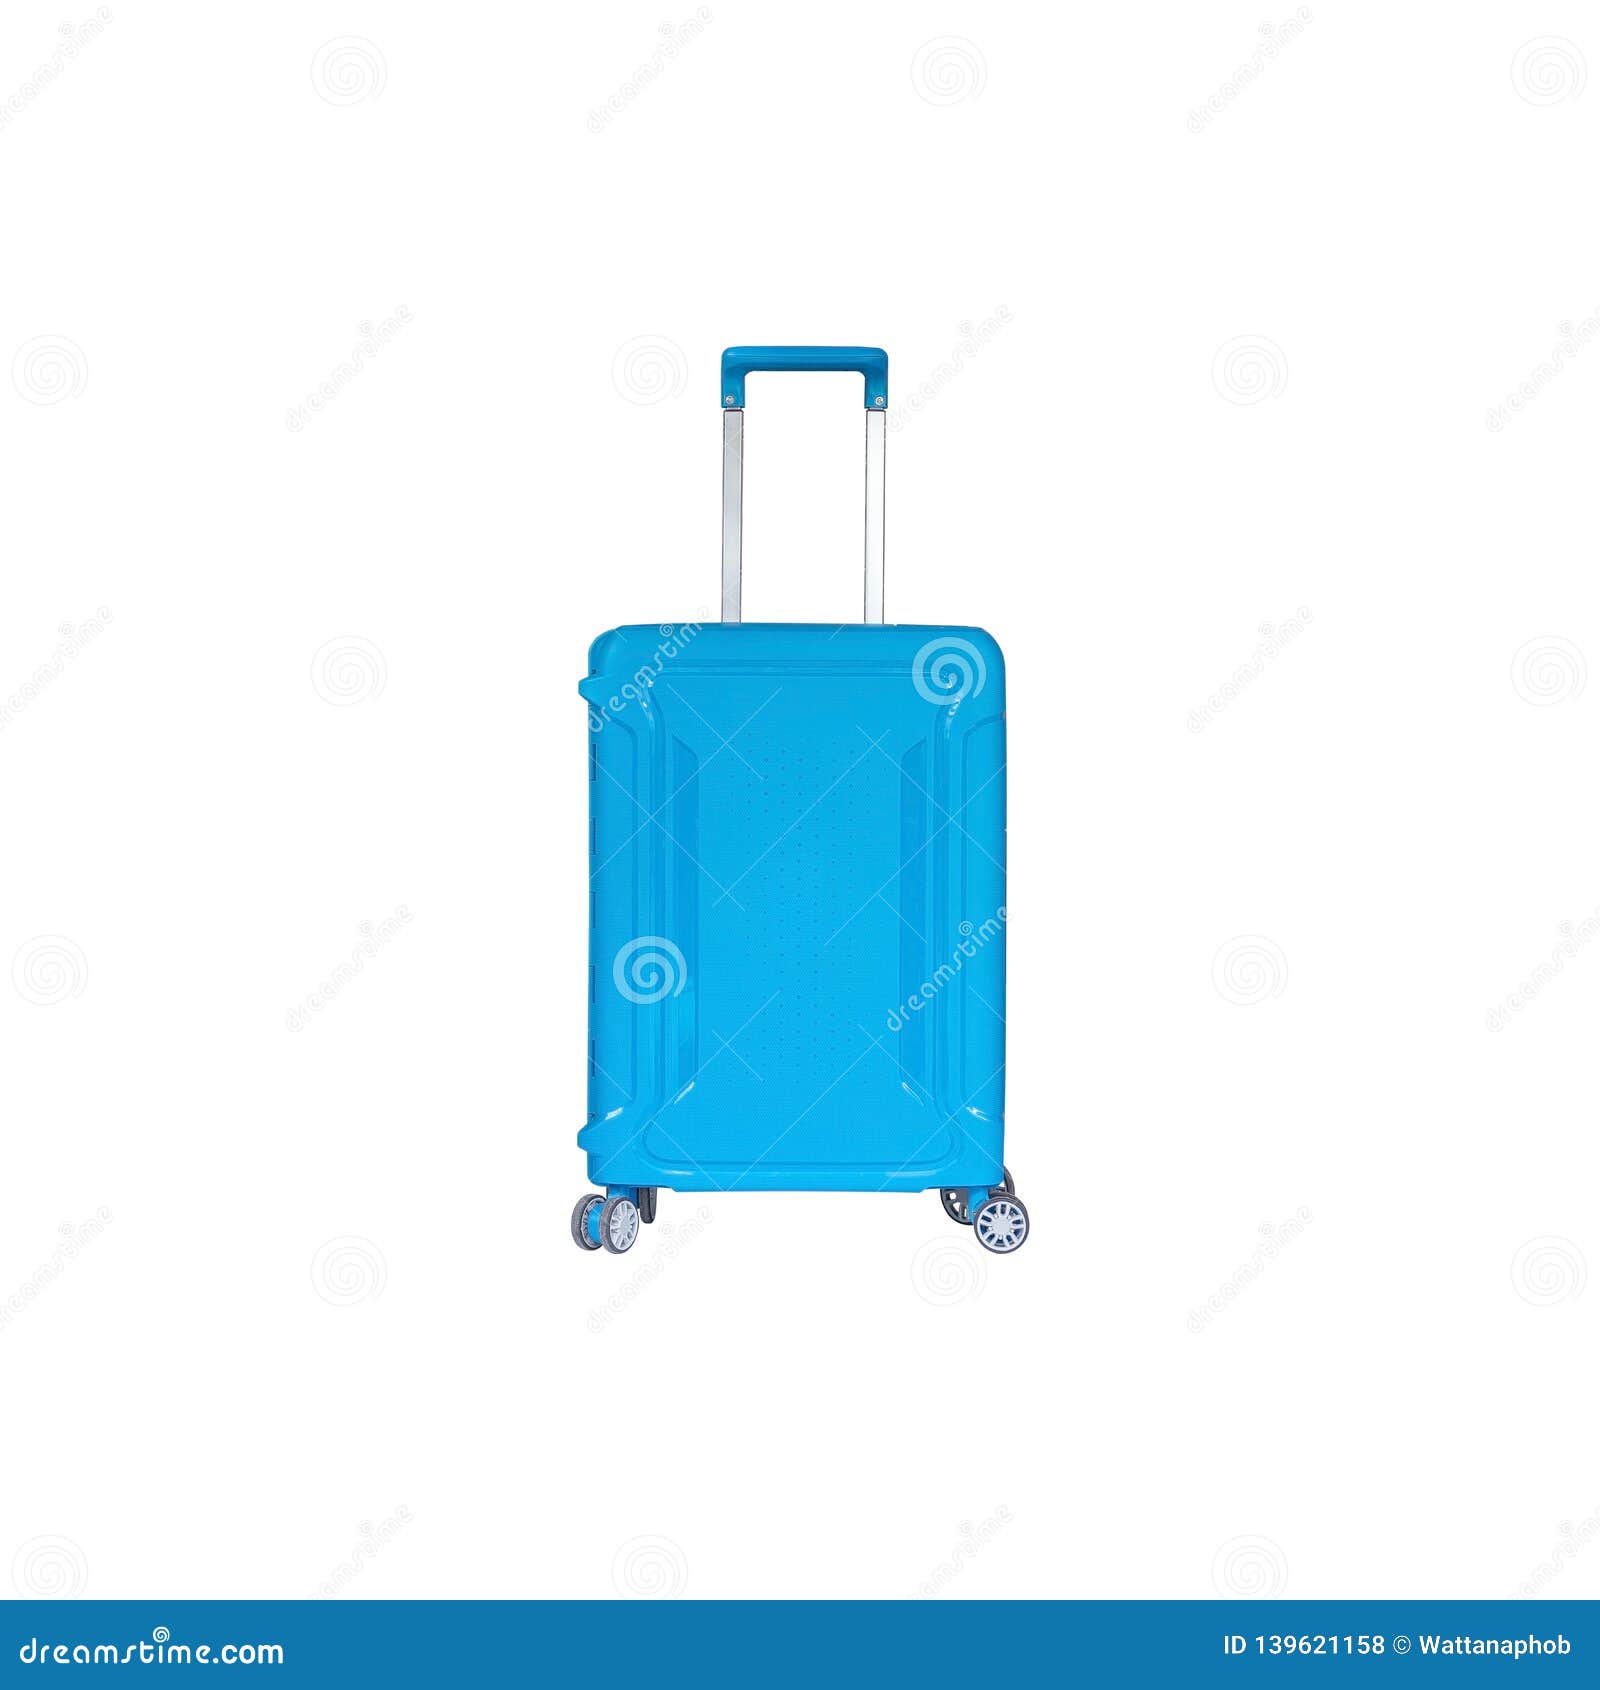 Luggage Isolated on White Background Stock Photo - Image of business ...